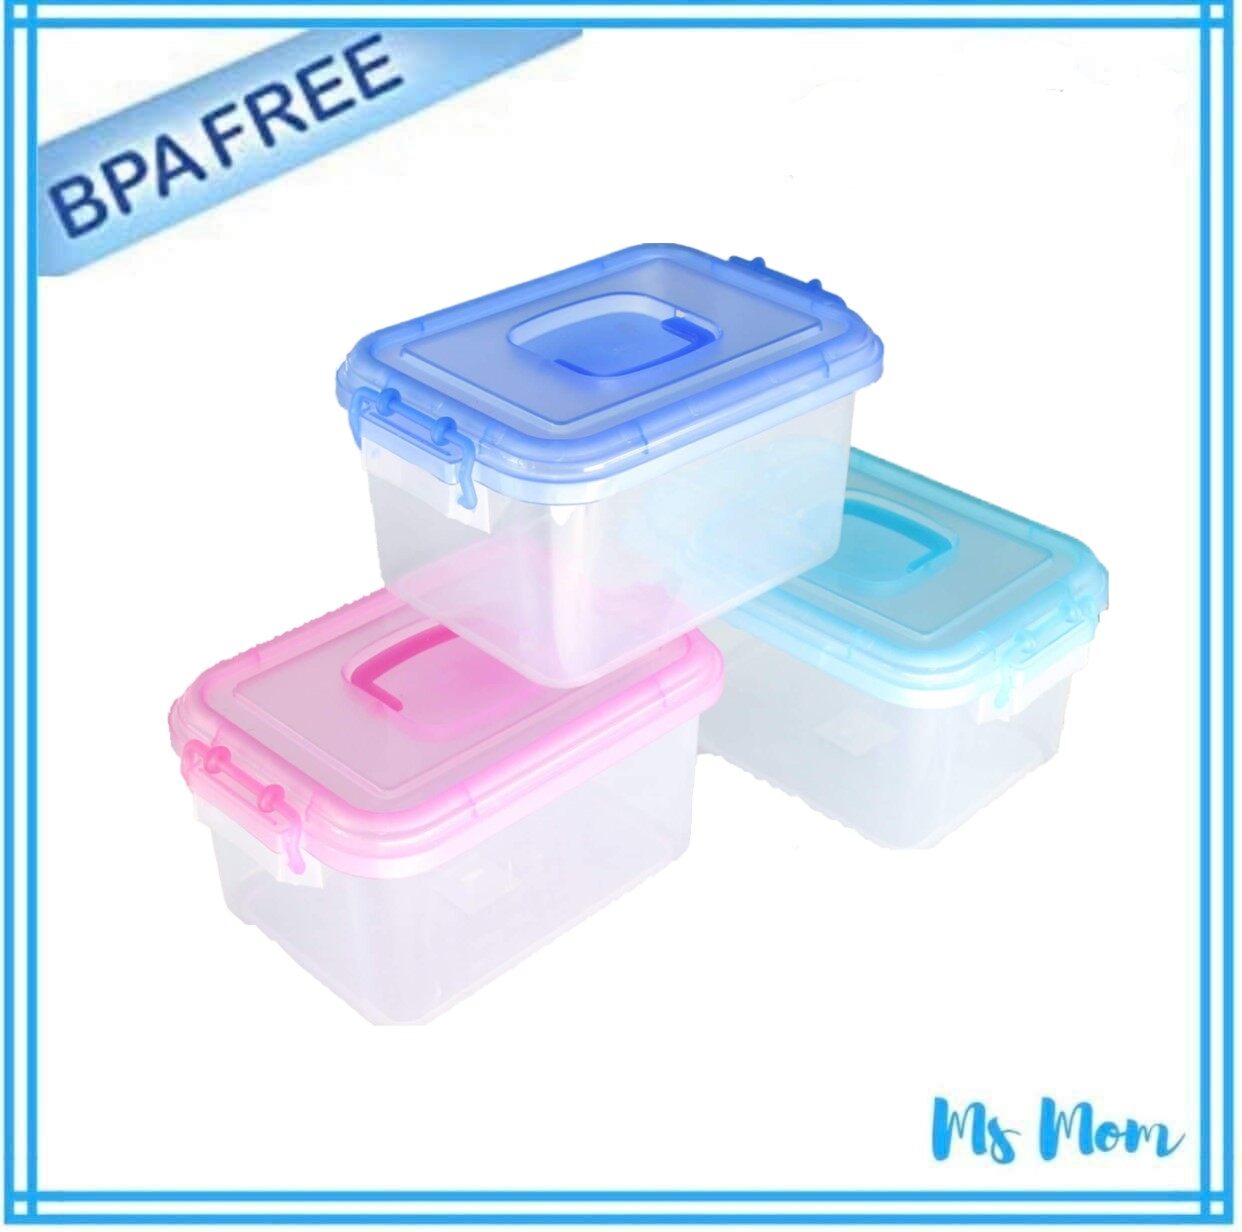 กล่องพลาสติกเก็บกรวยปั๊มนมและอุปกรณ์ BPA-Free